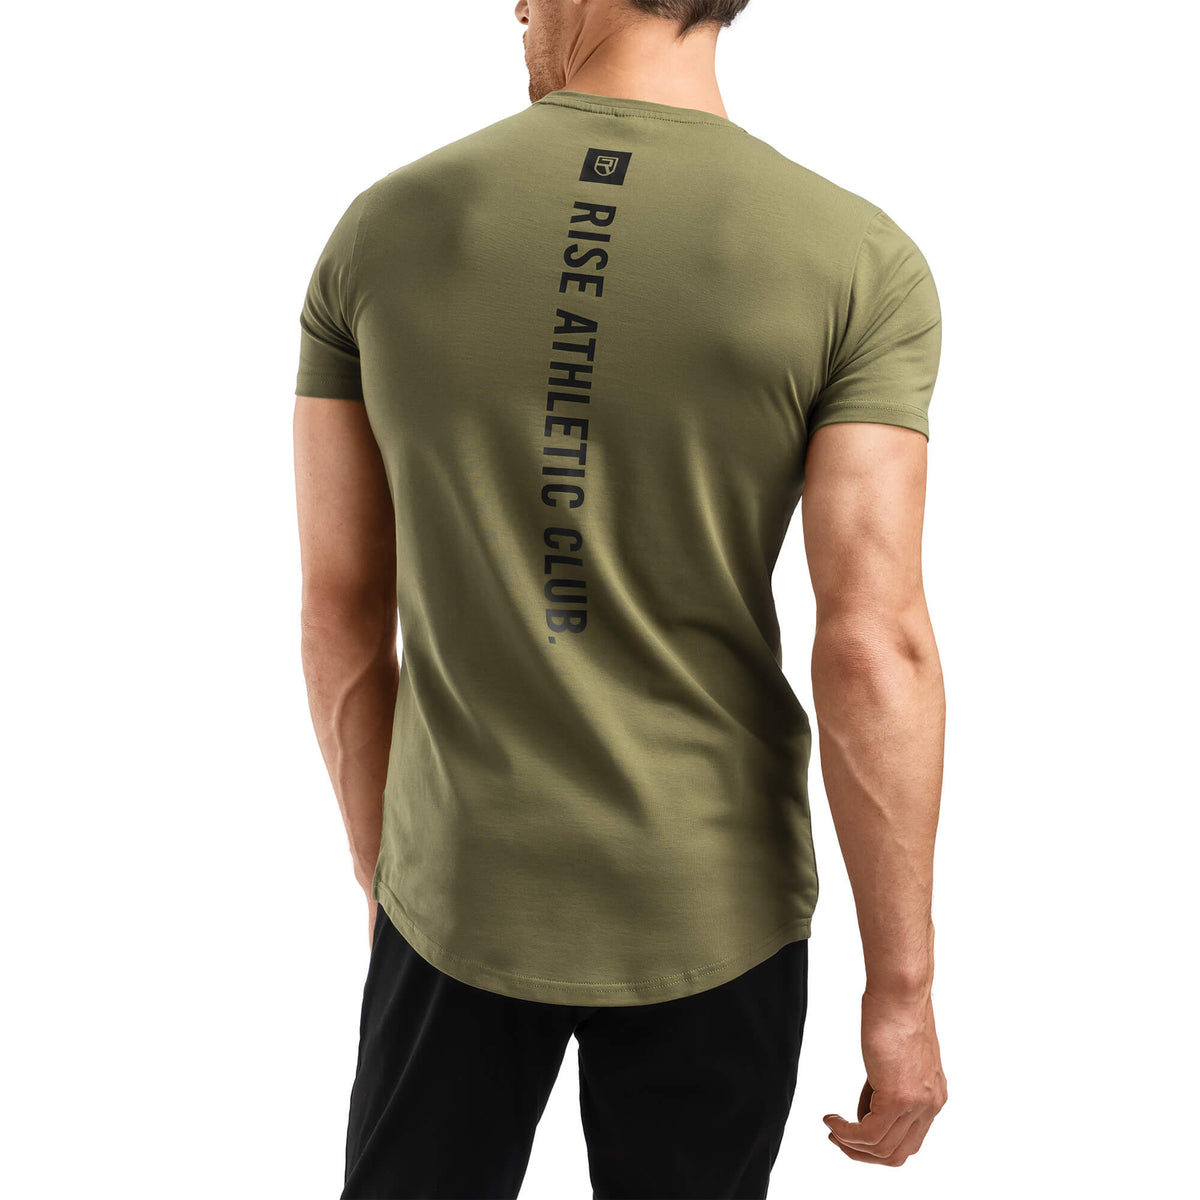 Athletic Club T-Shirt - Army Green